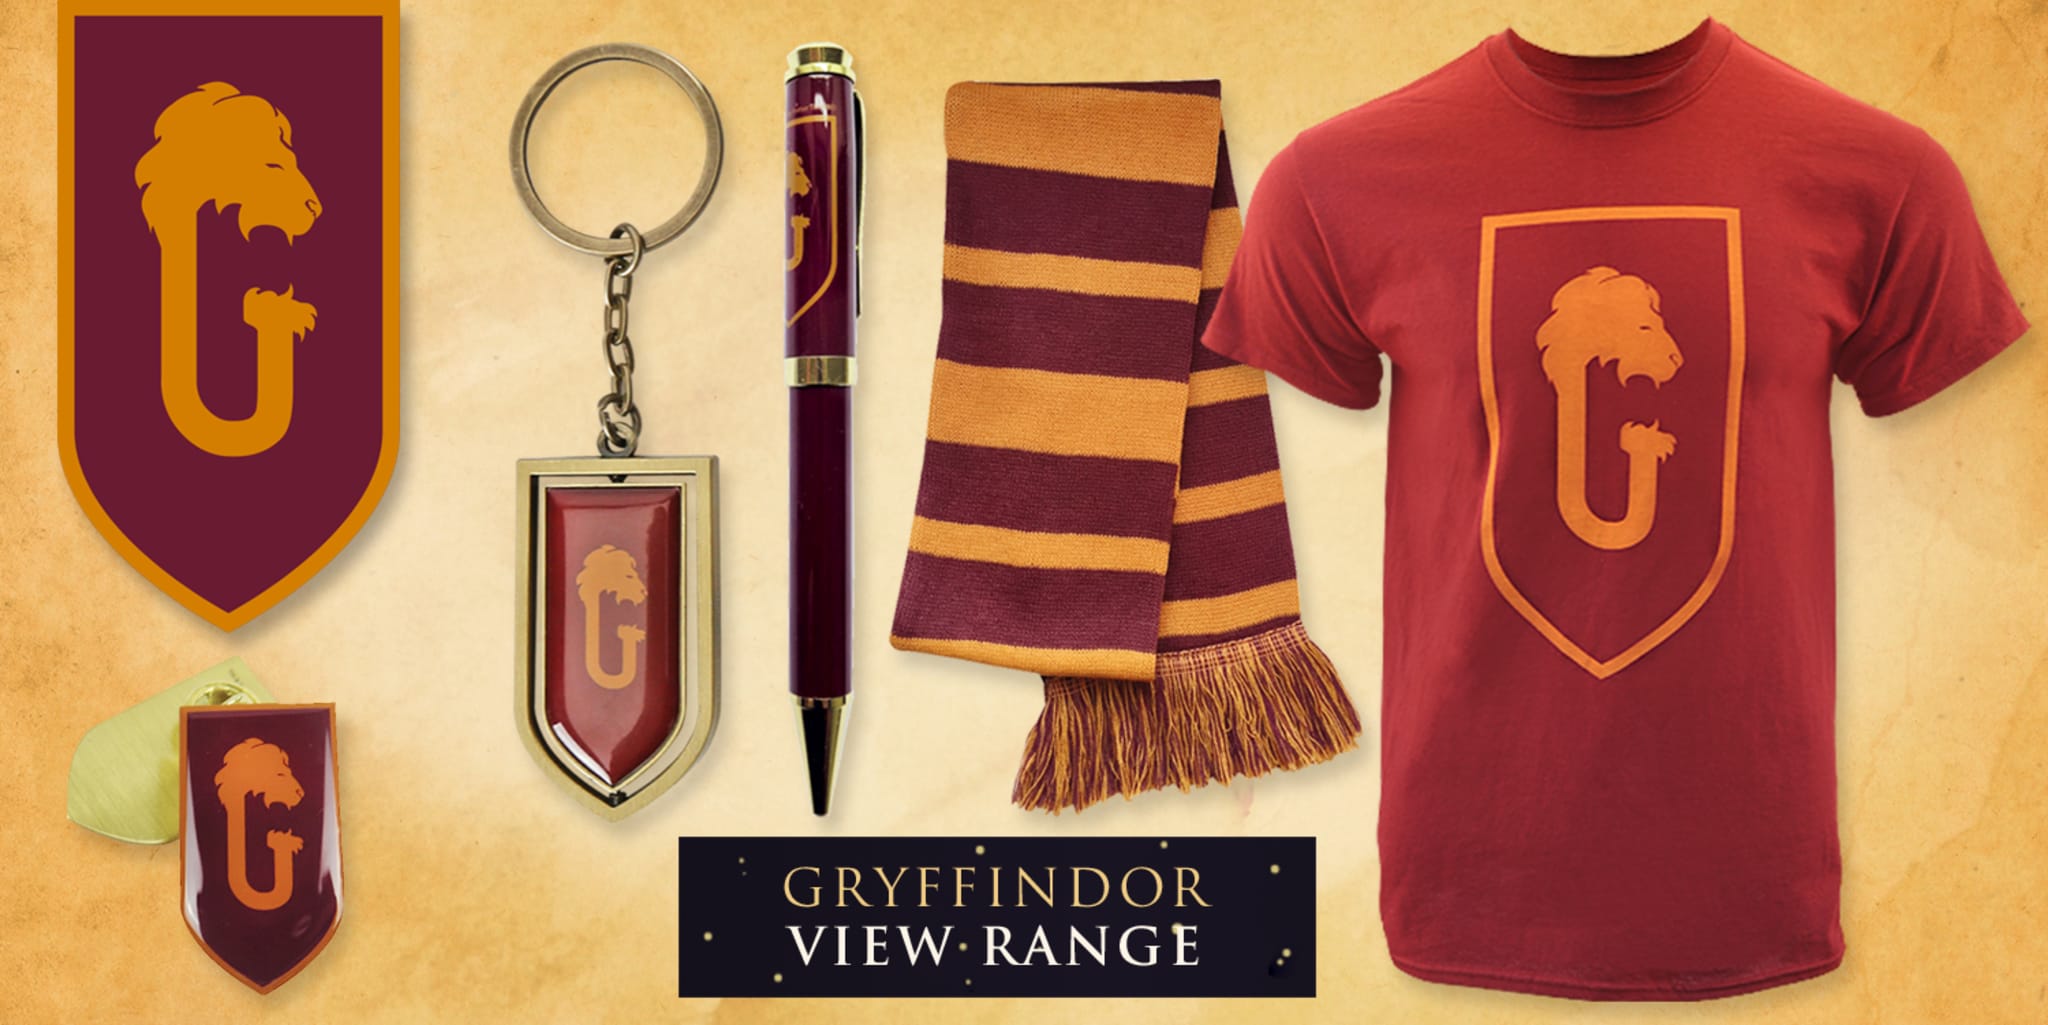 Harry Potter Gifts For Kids, Shop Online